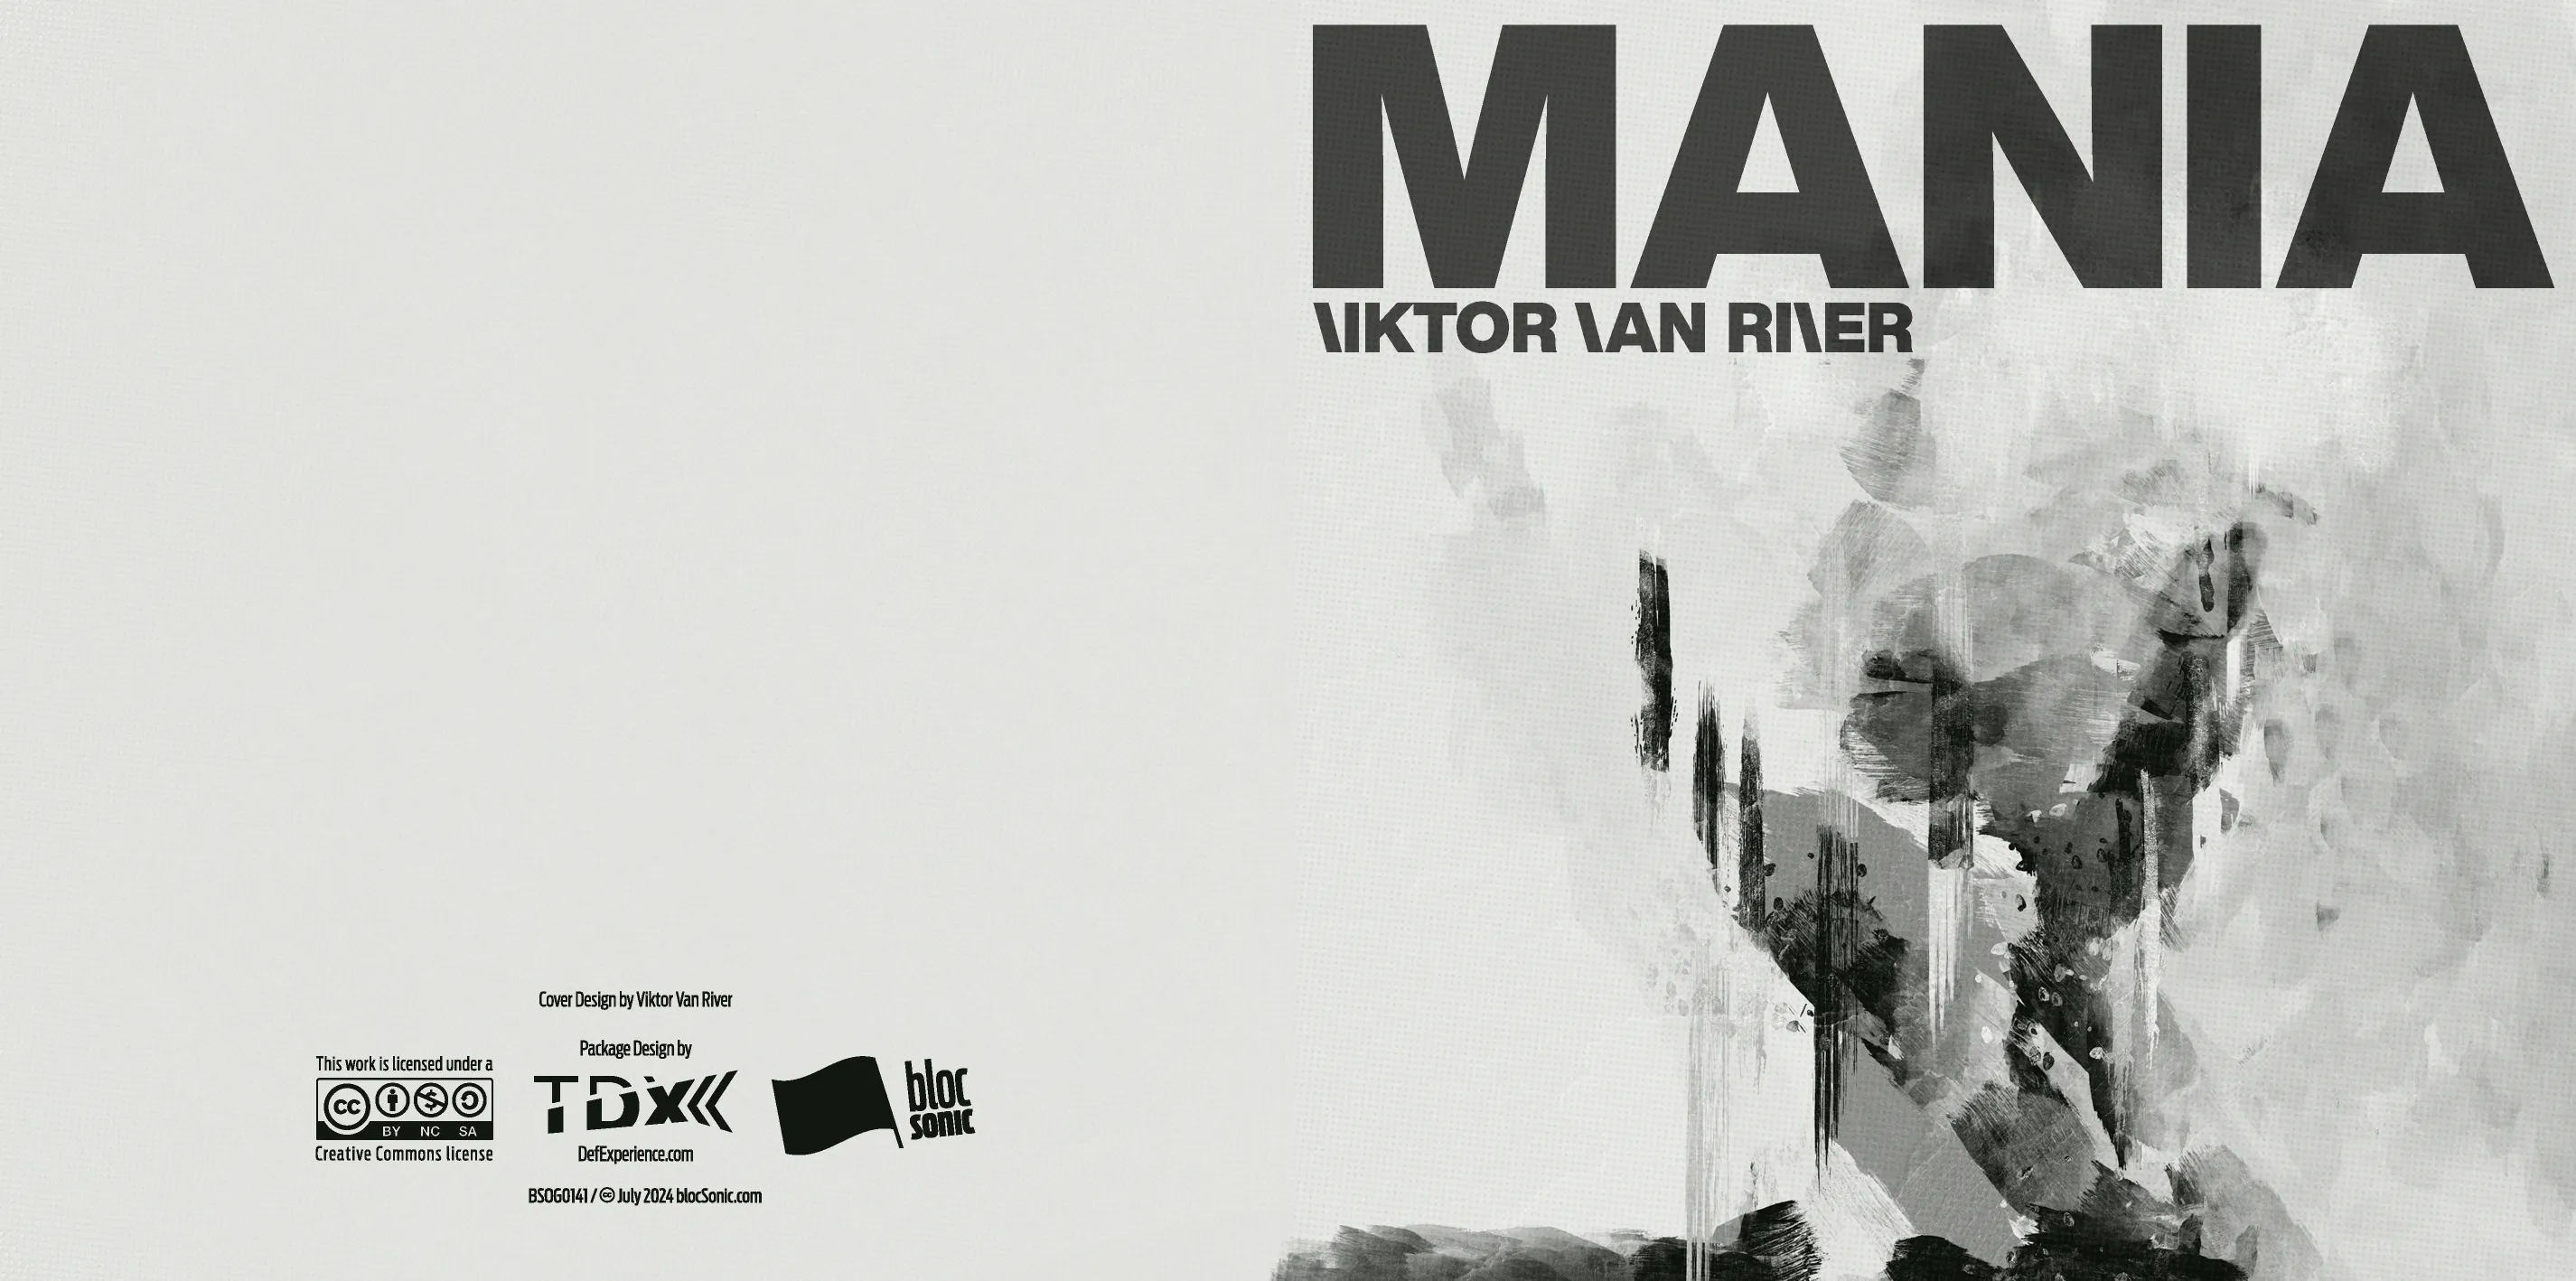 Album insert art for “Mania” by Viktor Van River